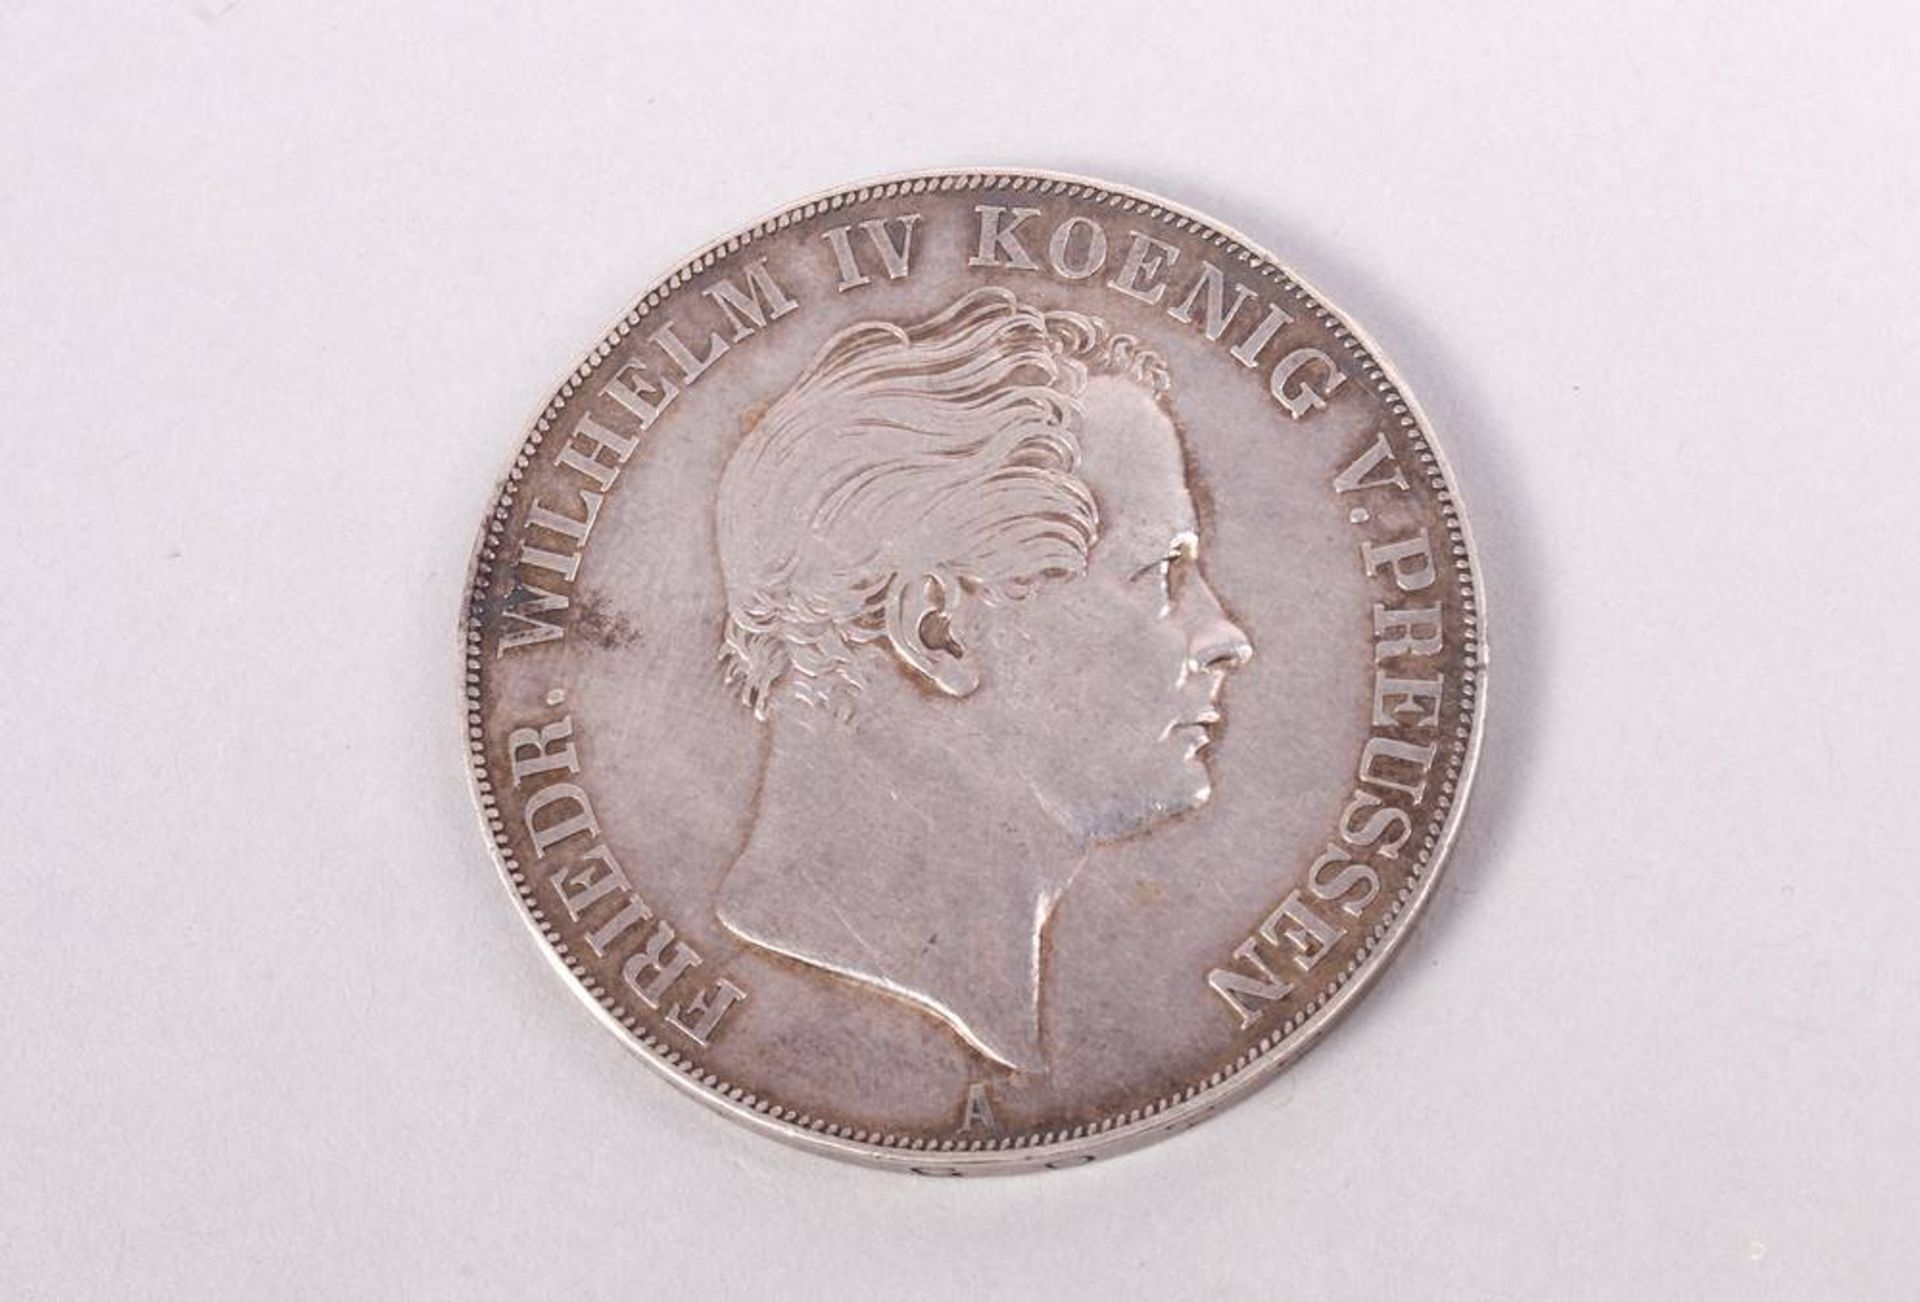 2 Thaler / Doppelthaler, 3 1/2 Gulden, 1841, Prussia, silver, SS-VZ